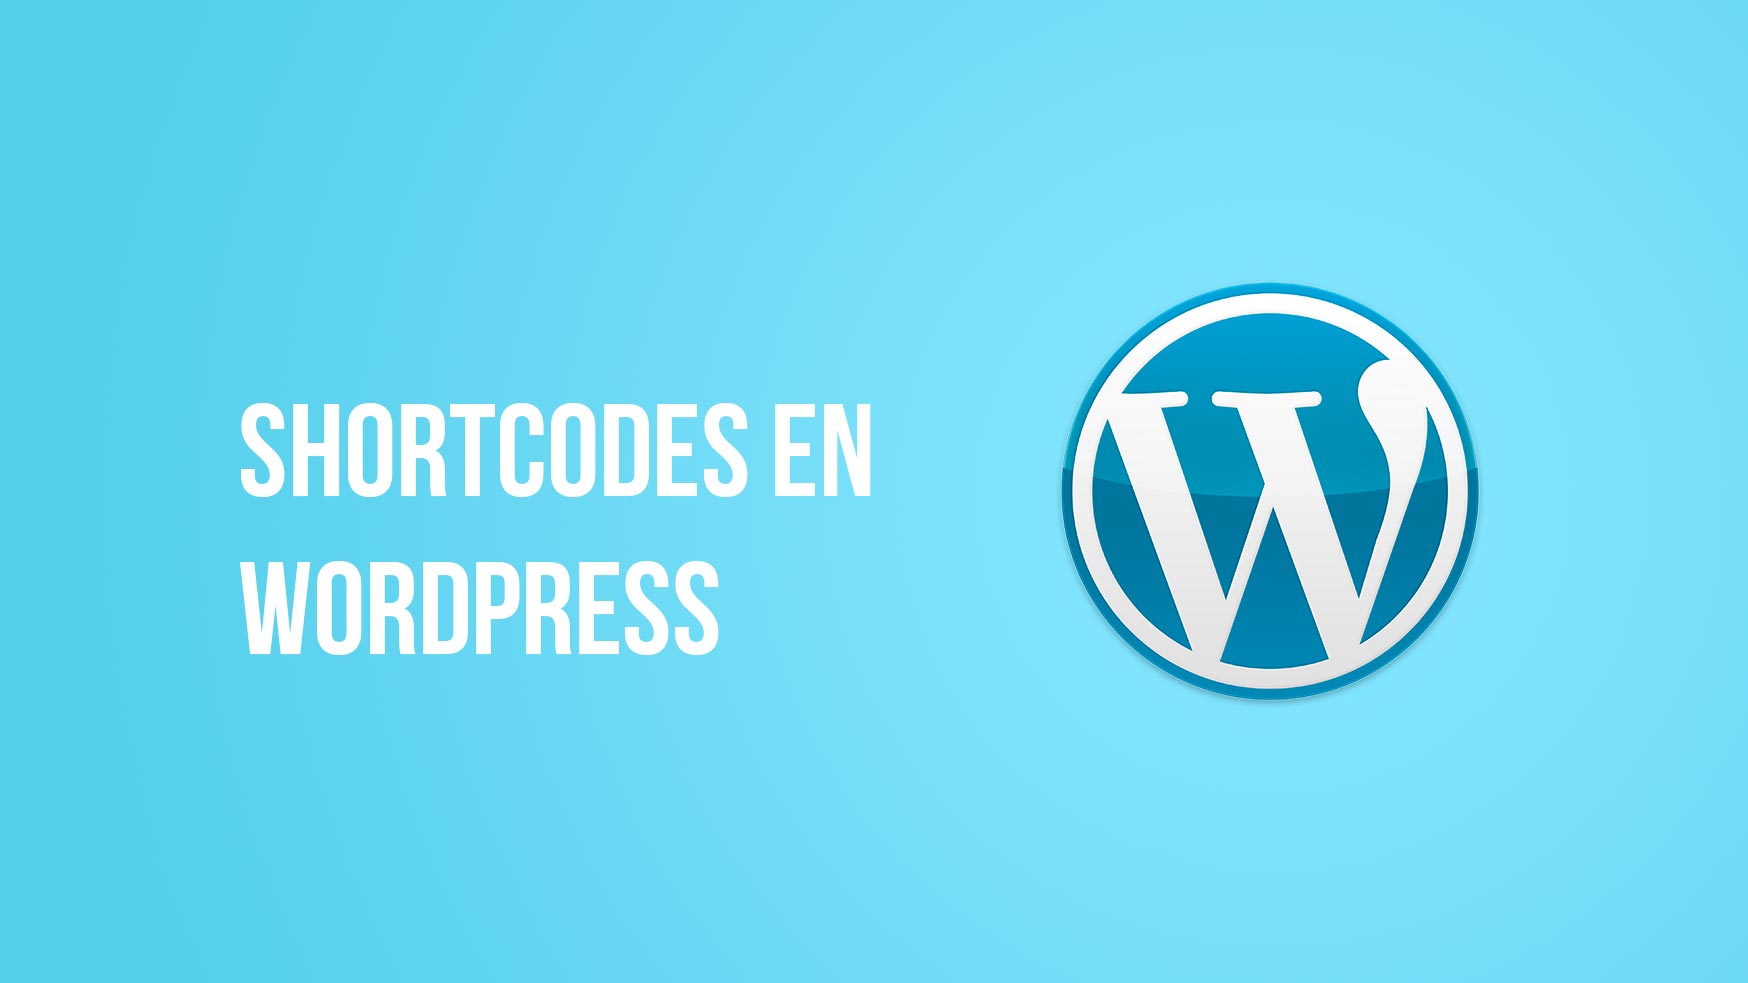 Shortcodes en WordPress